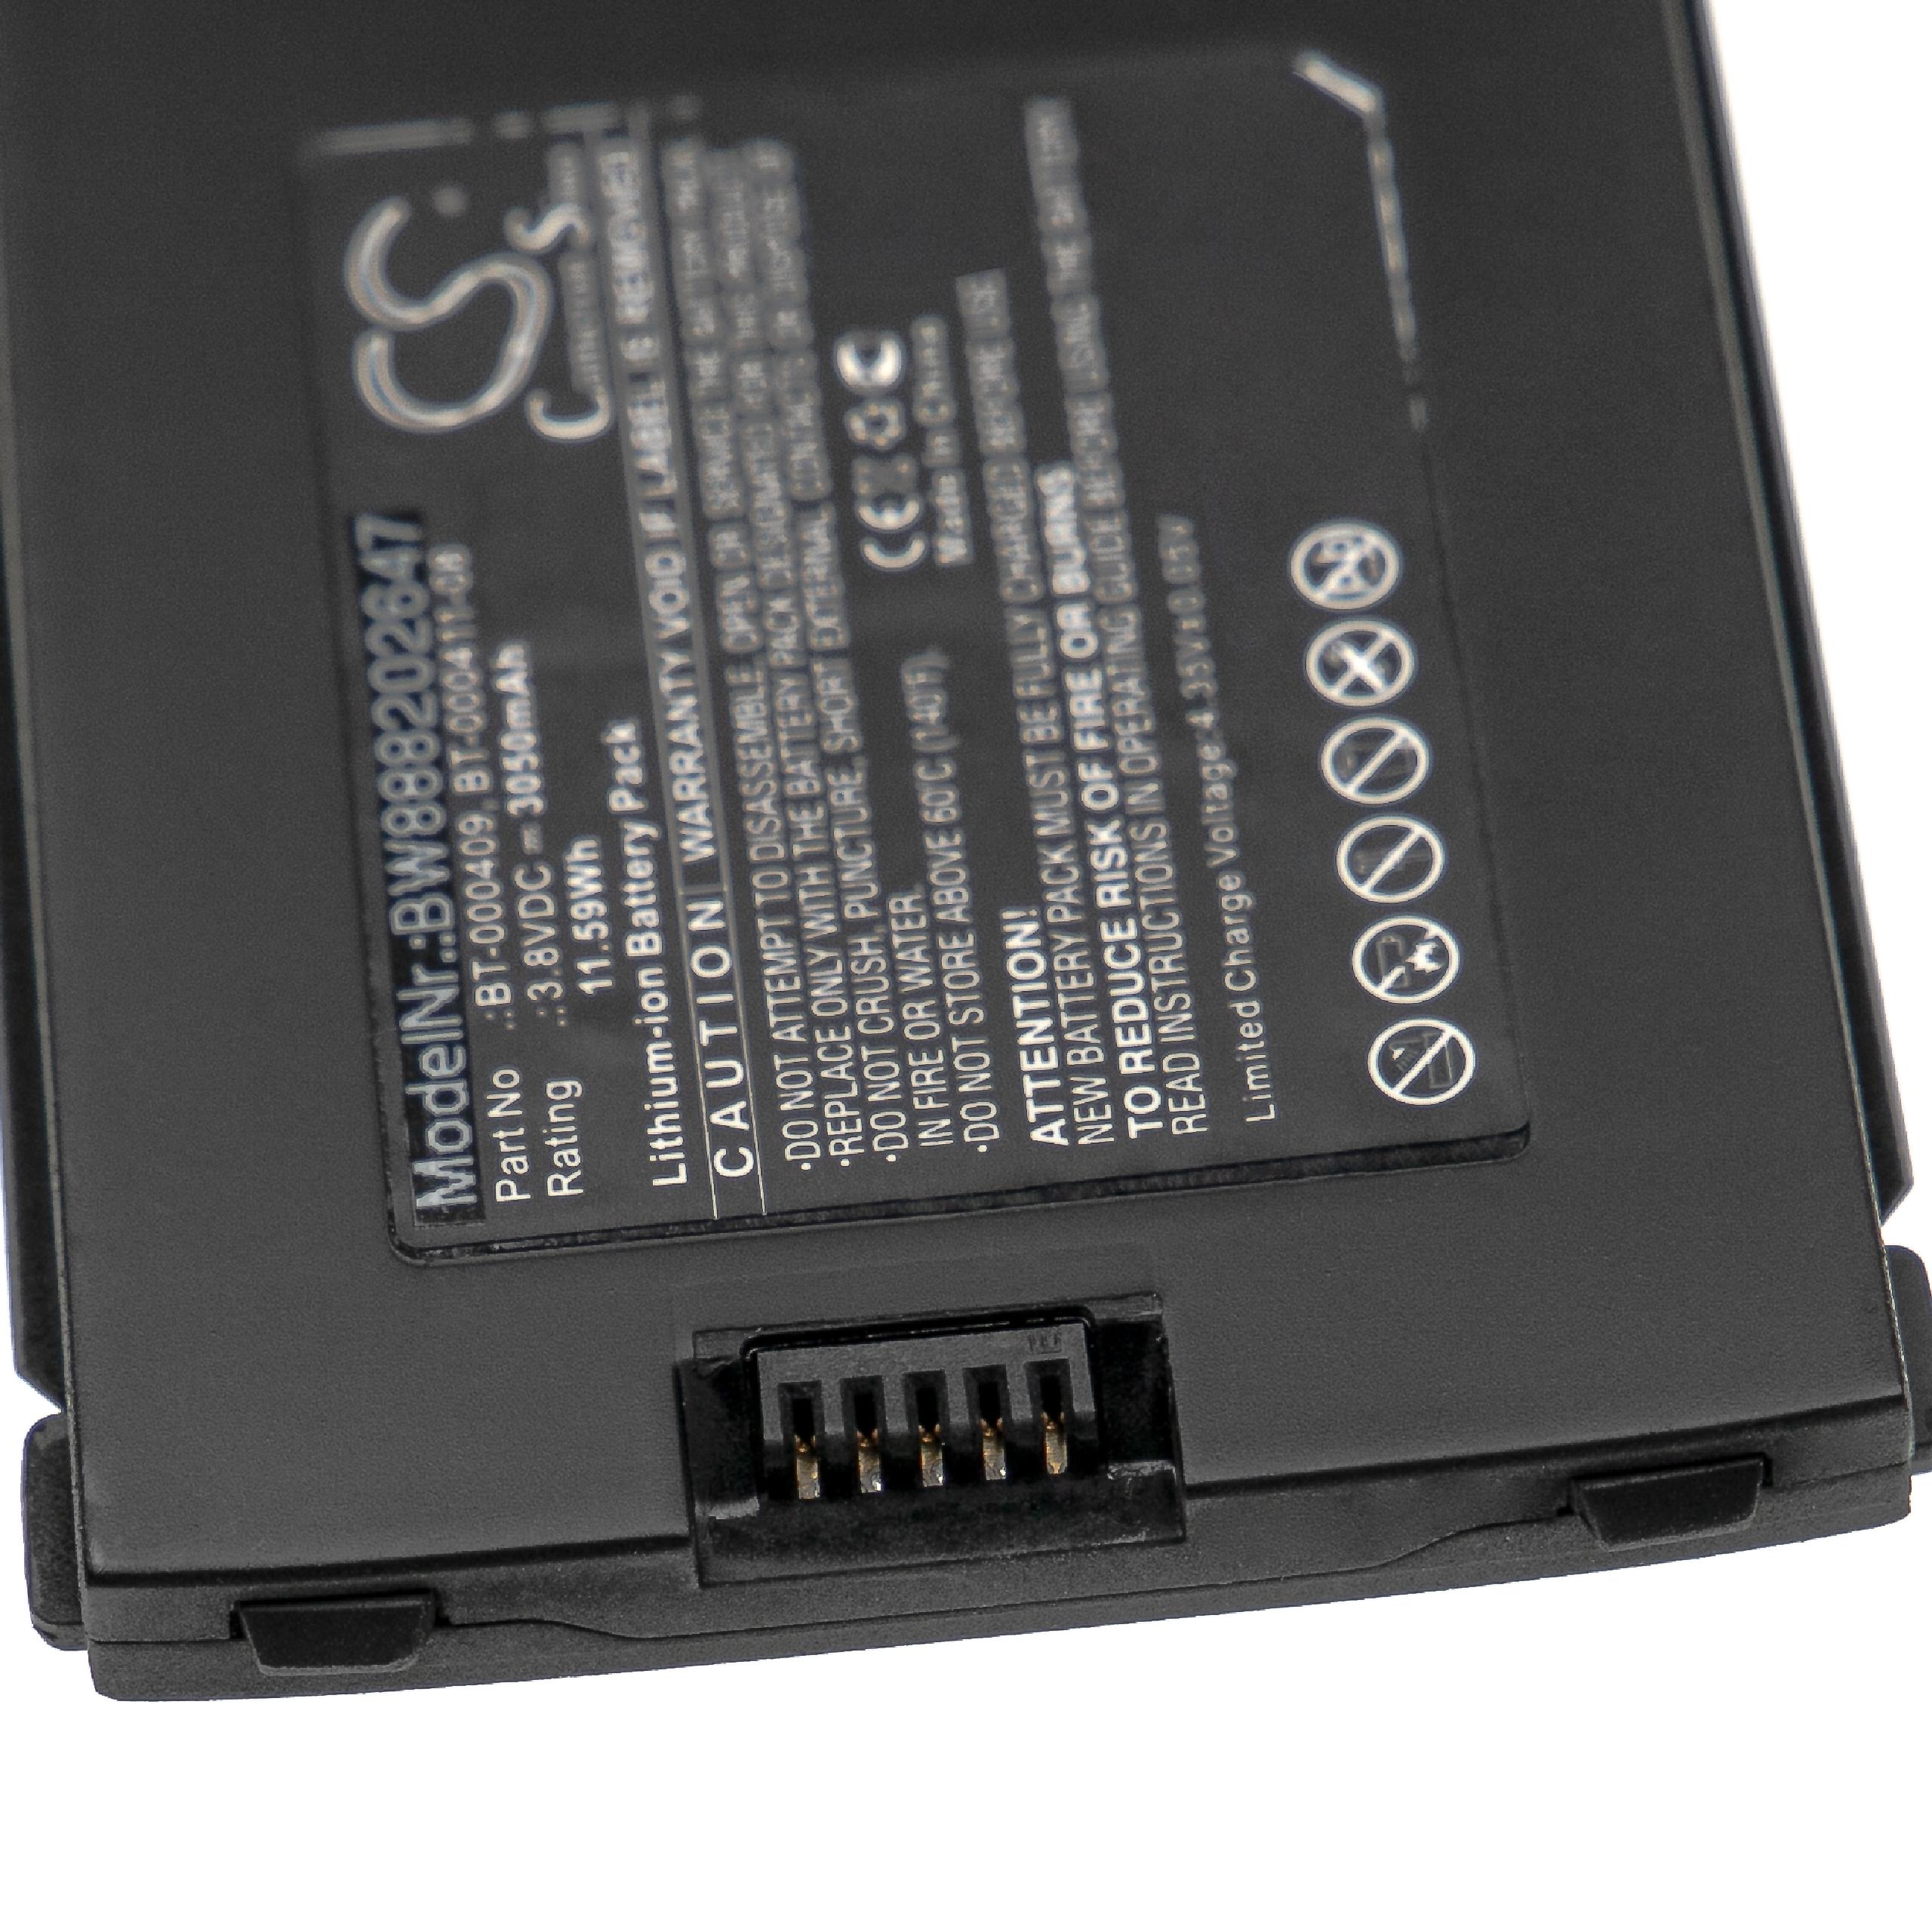 Batterie remplace Zebra BT-000409, BT-000411-08 pour ordinateur de poche - 3050mAh 3,8V Li-ion